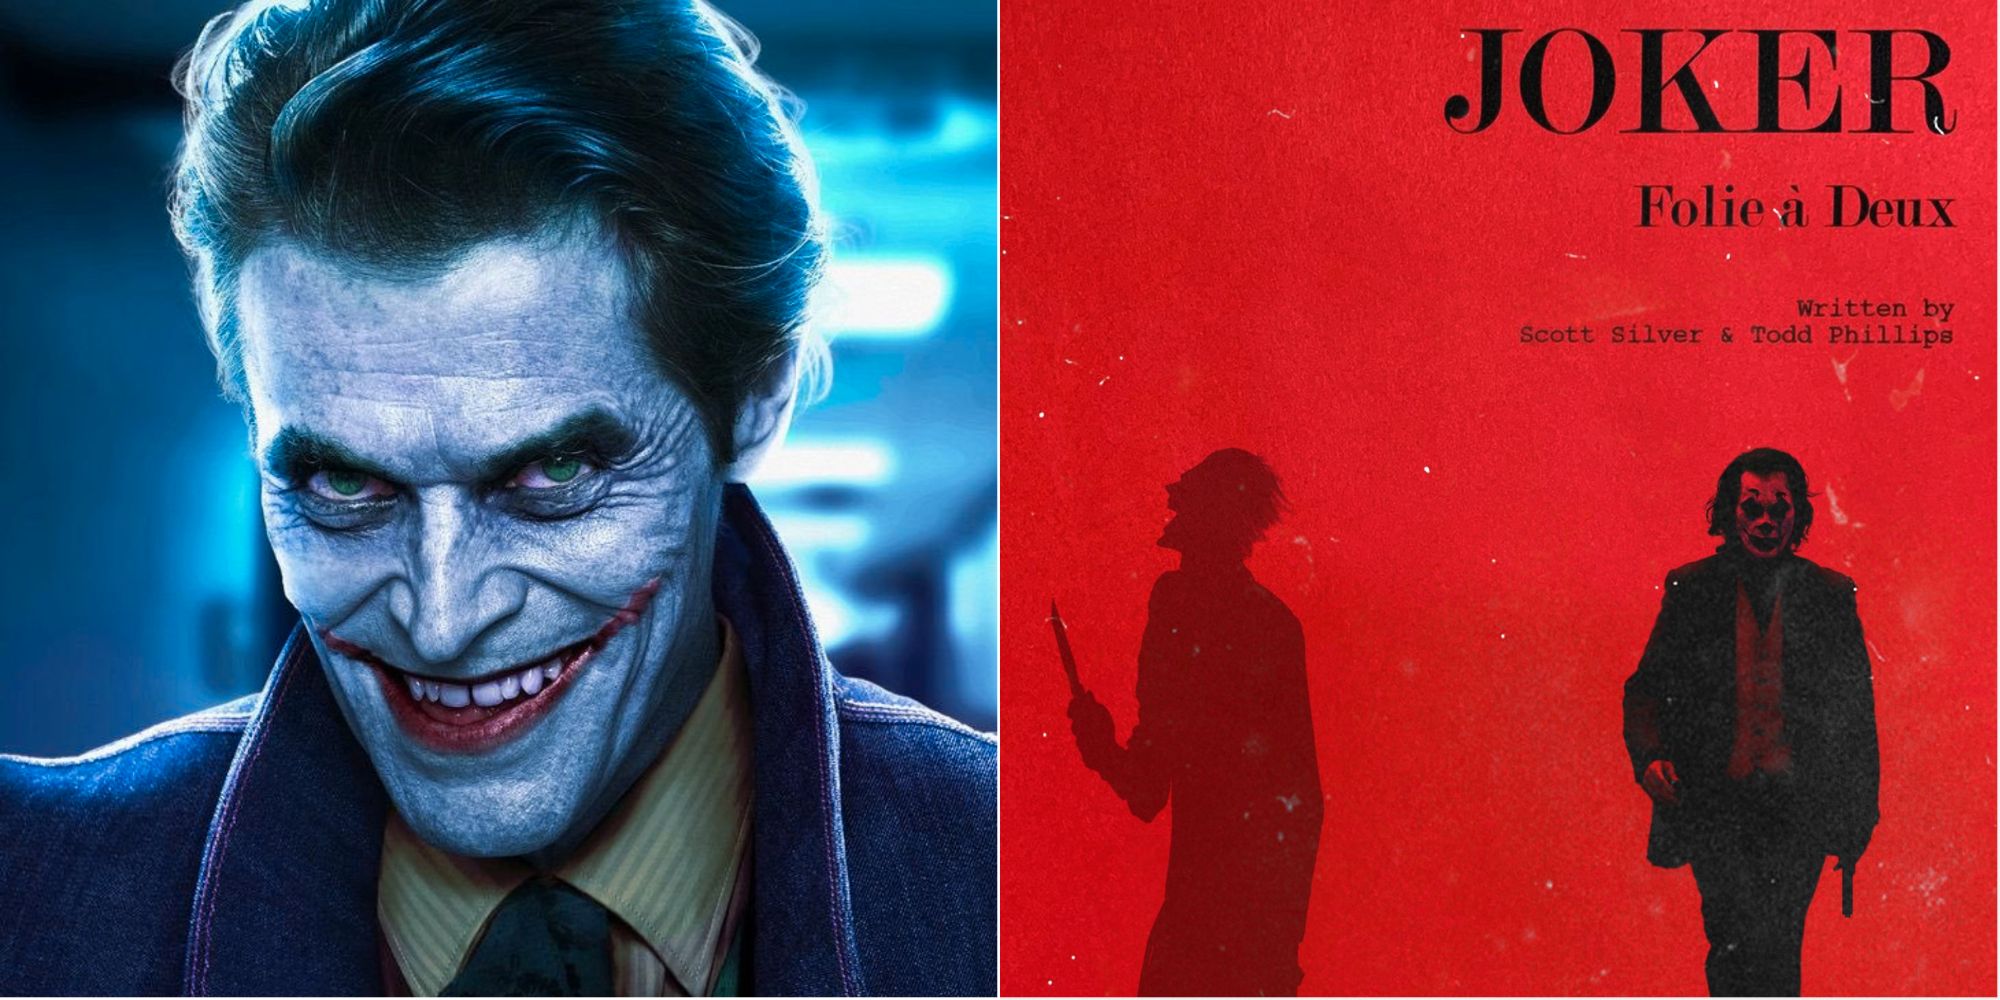 Las 10 mejores reacciones en Twitter al anuncio de The Joker 2